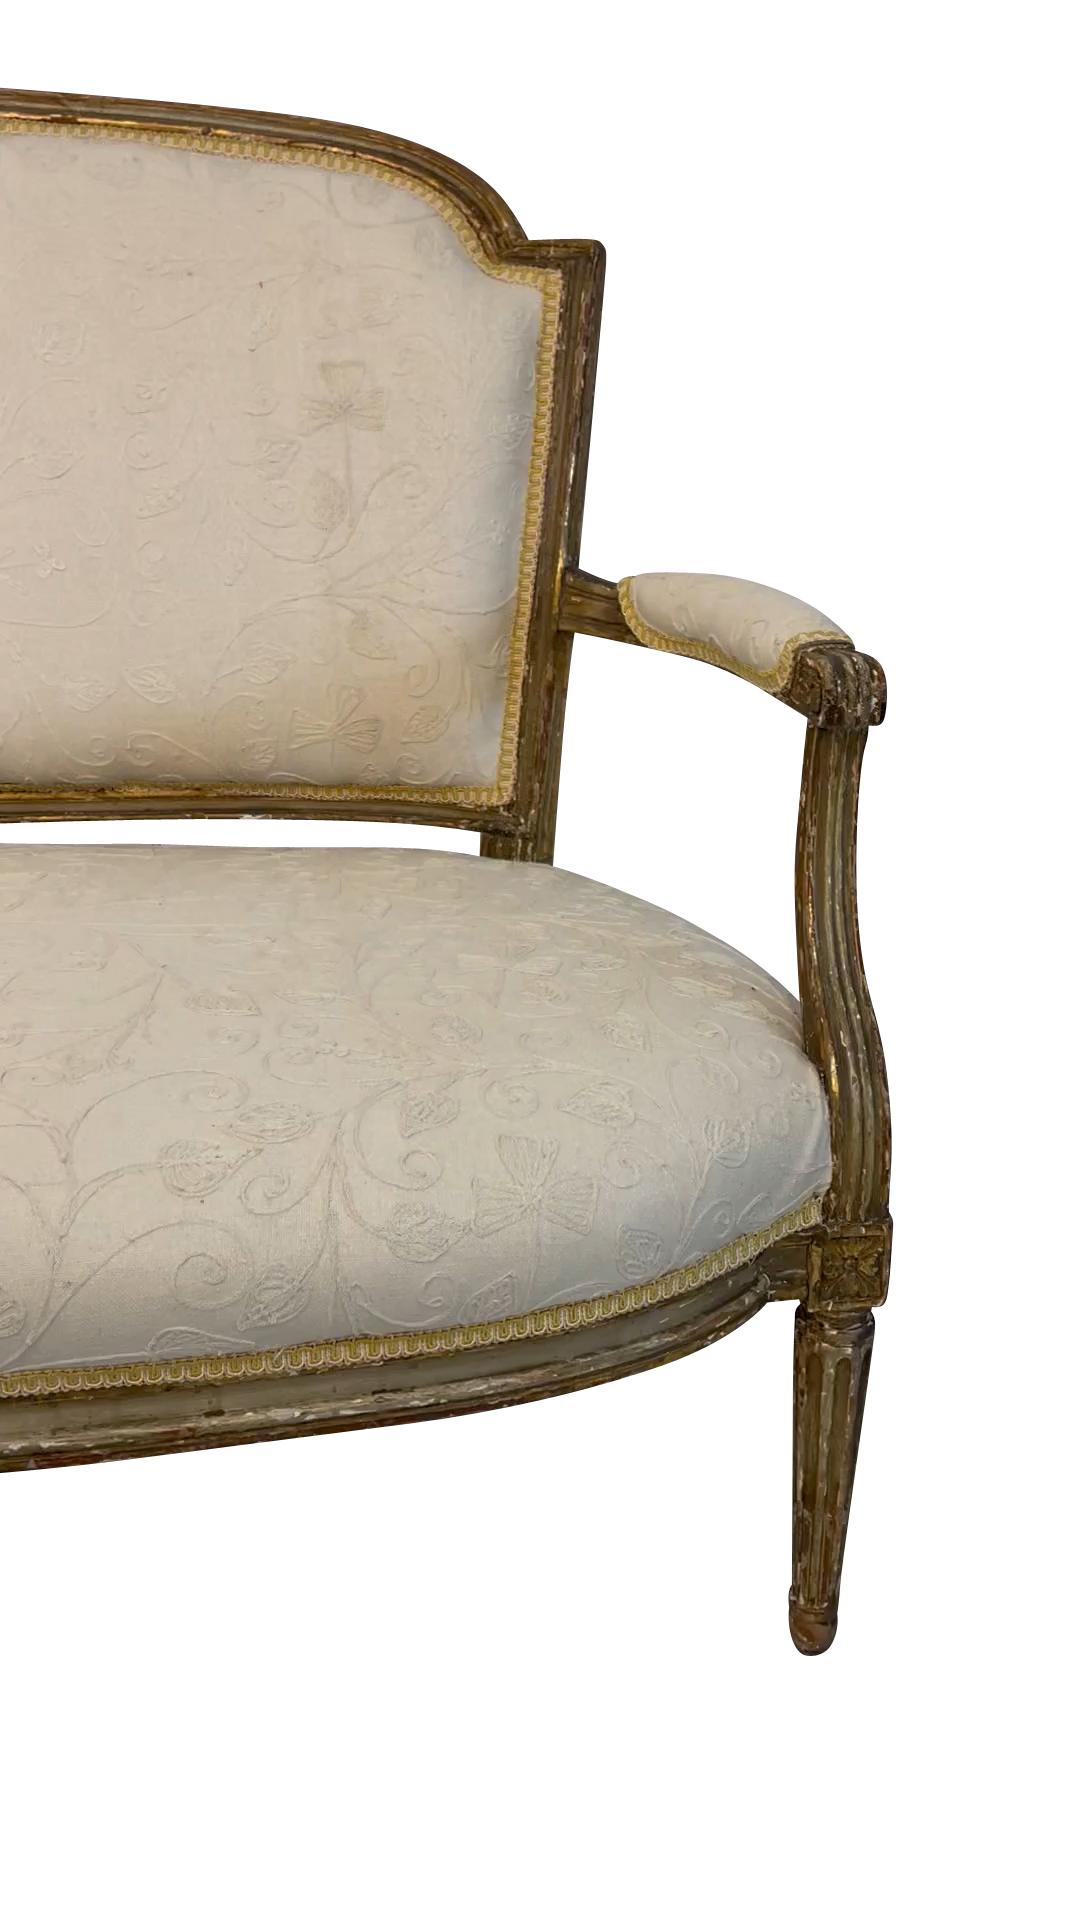 Canapé classique en bois doré de style Louis XVI du XIXe siècle, tapissé d'un tissu brodé crème sur crème. Le rembourrage d'origine en crin de cheval a été conservé sous le nouveau tissu. 36 H X 54,5 L X 20 P 